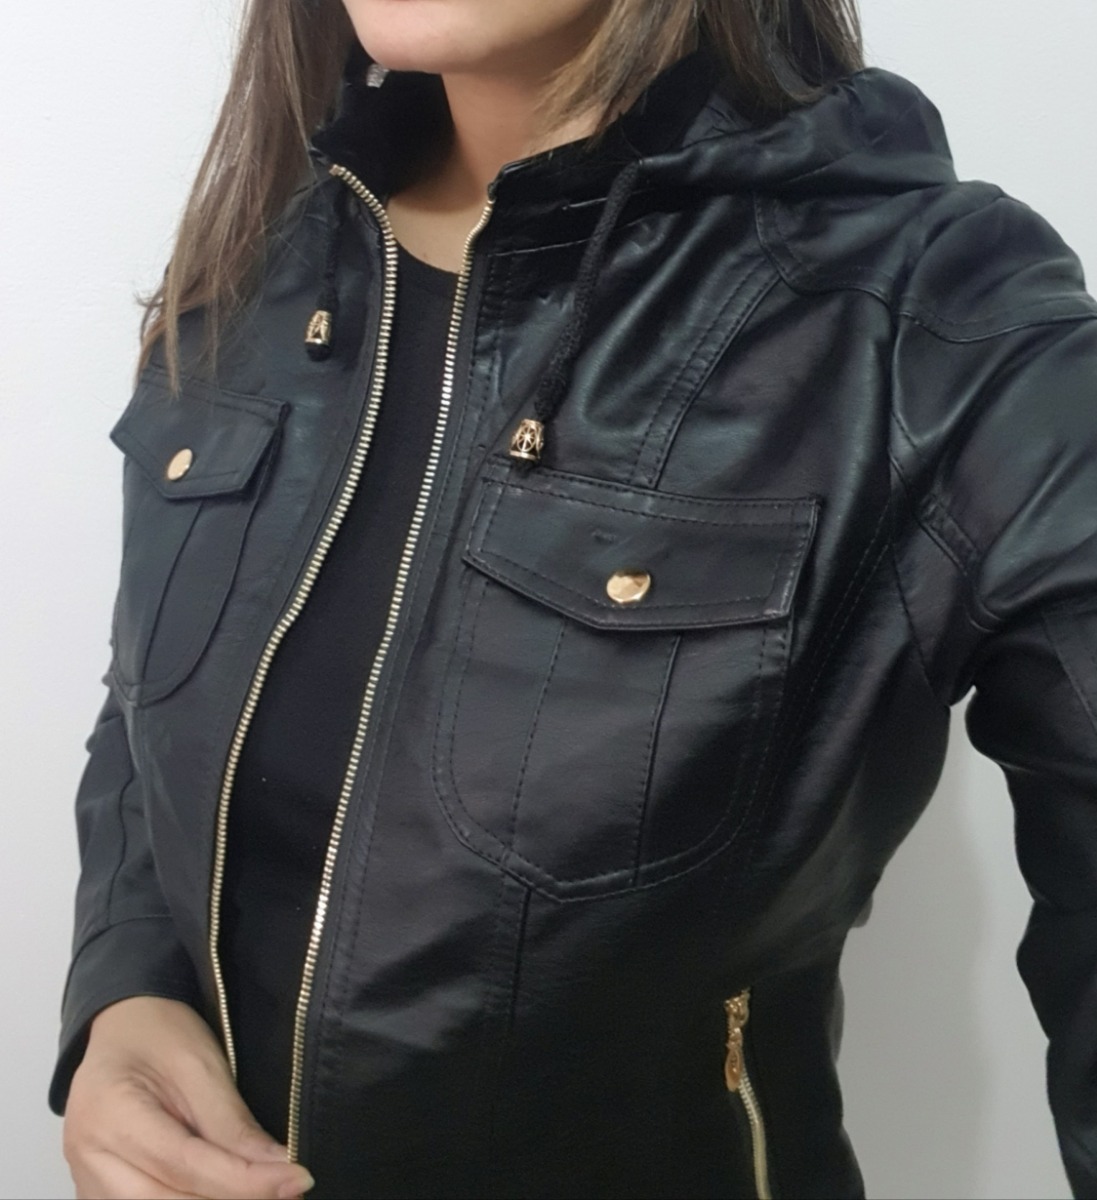 jaqueta preta com capuz feminina